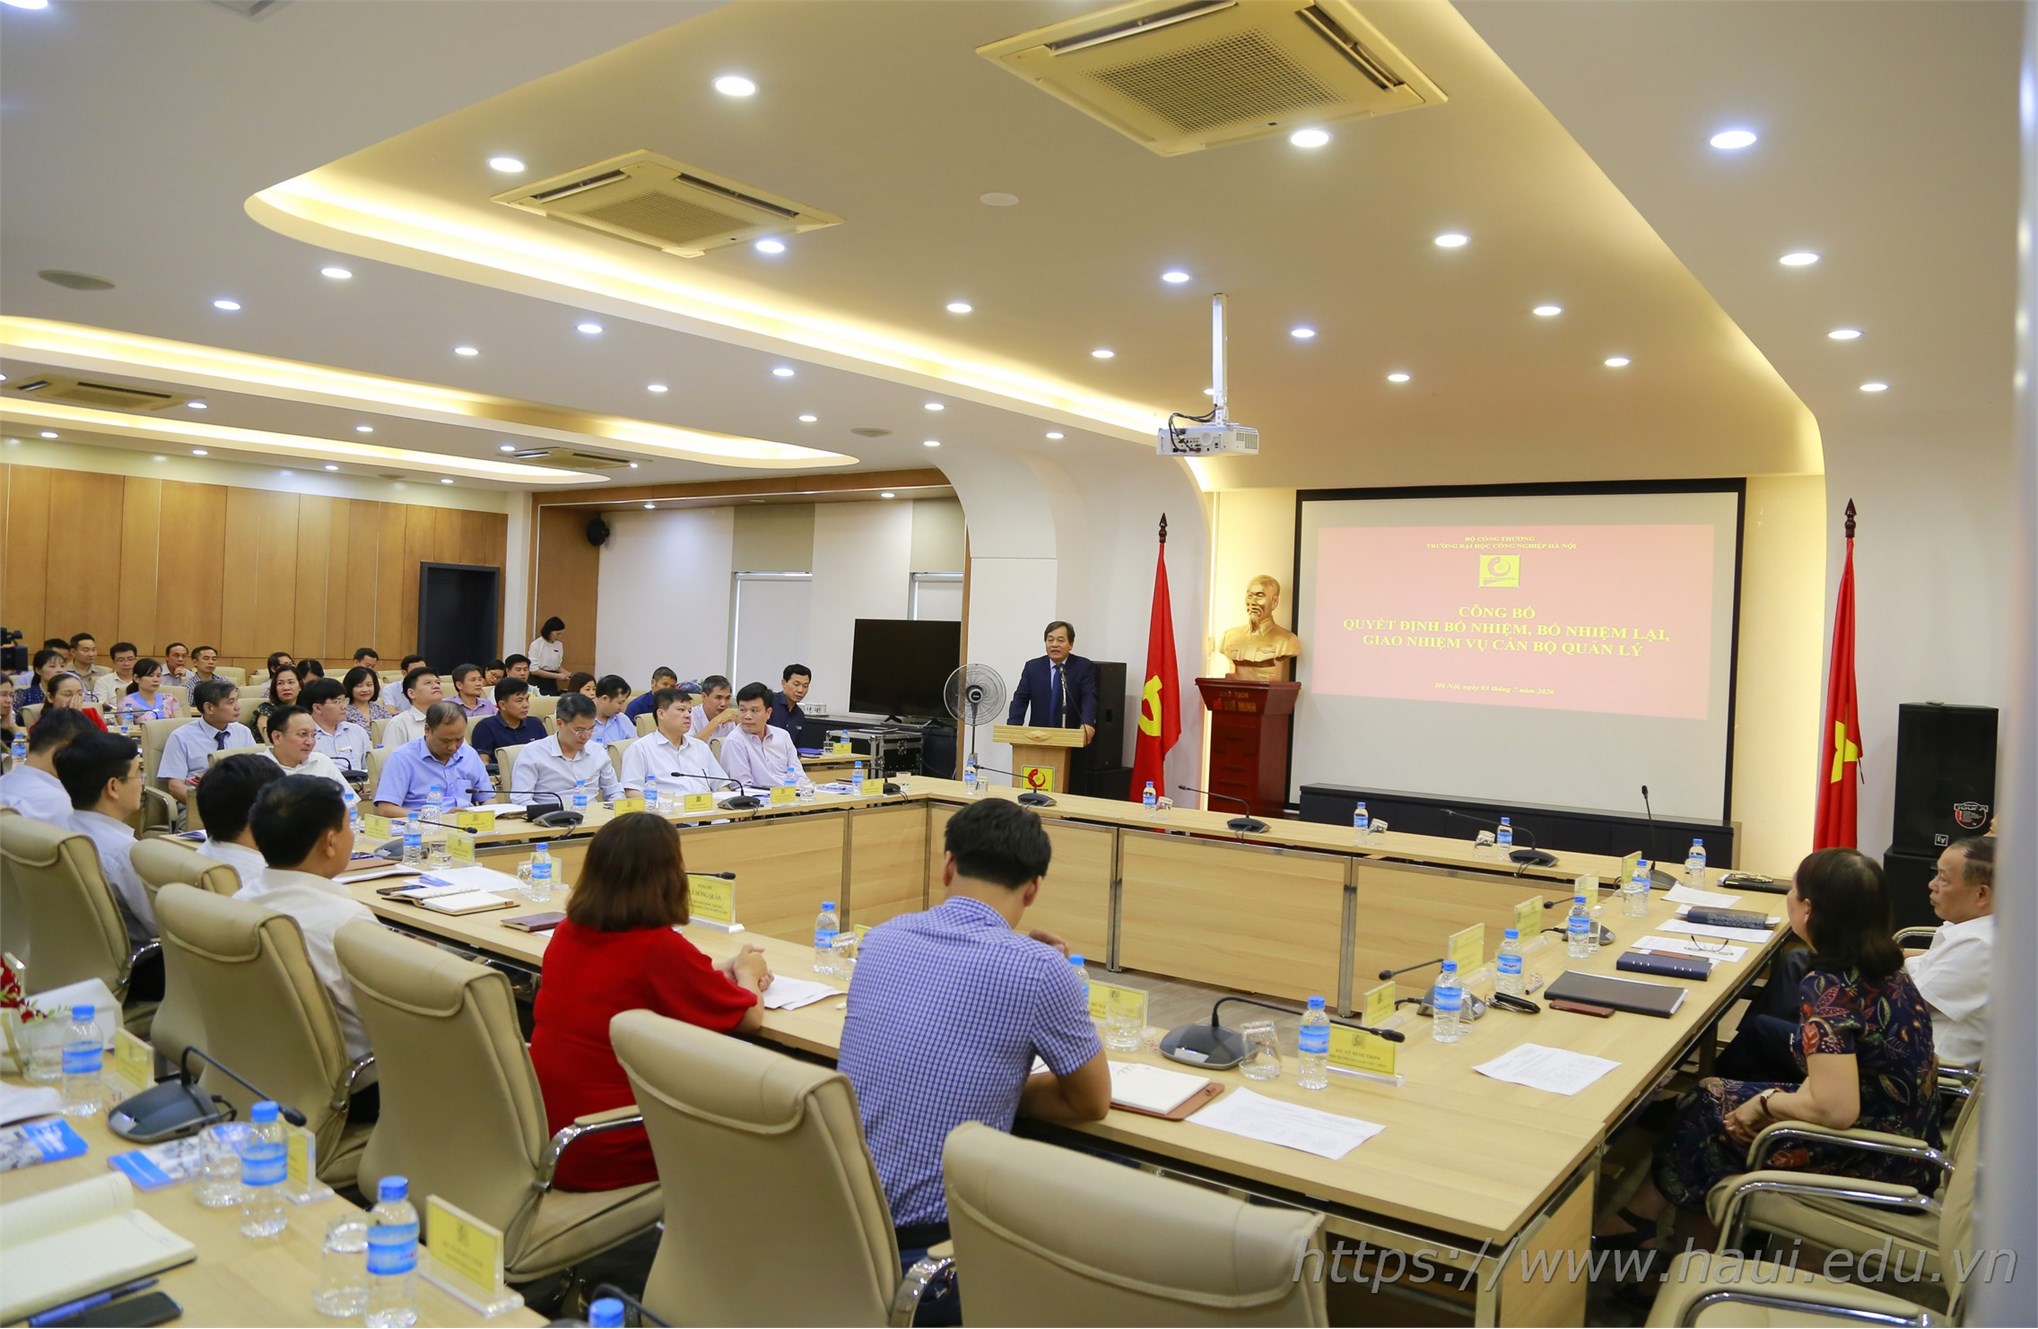 Đại học Công nghiệp Hà Nội trao Quyết định bổ nhiệm, bổ nhiệm lại, giao nhiệm vụ viên chức quản lý và công bố Quyết định bổ nhiệm Phó giáo sư